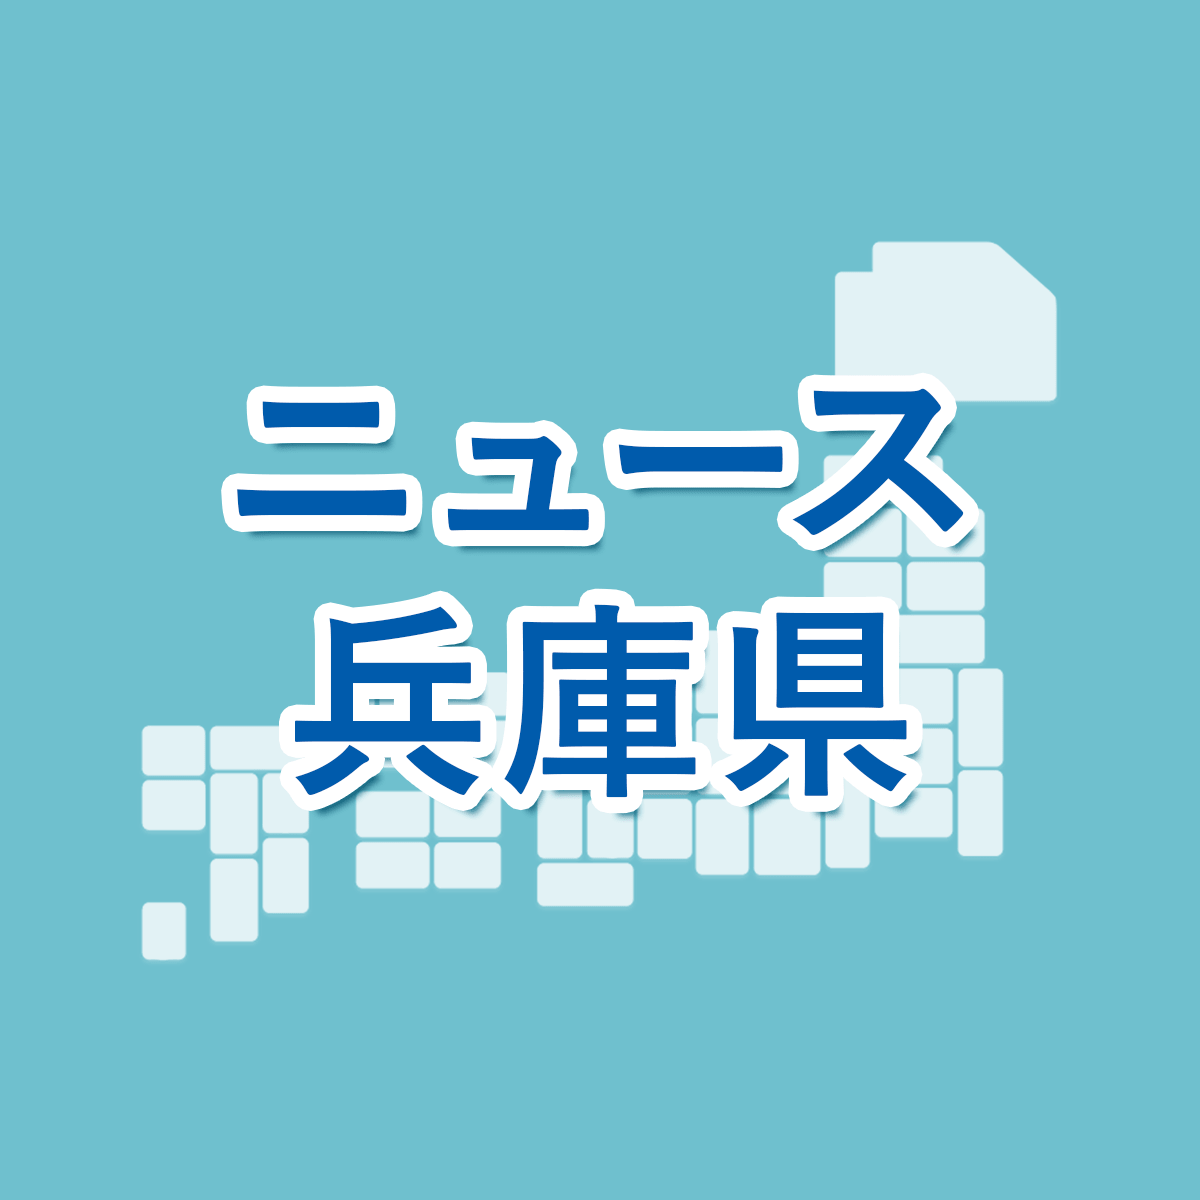 兵庫 県 公立 高校 倍率 2021 第 二 学区